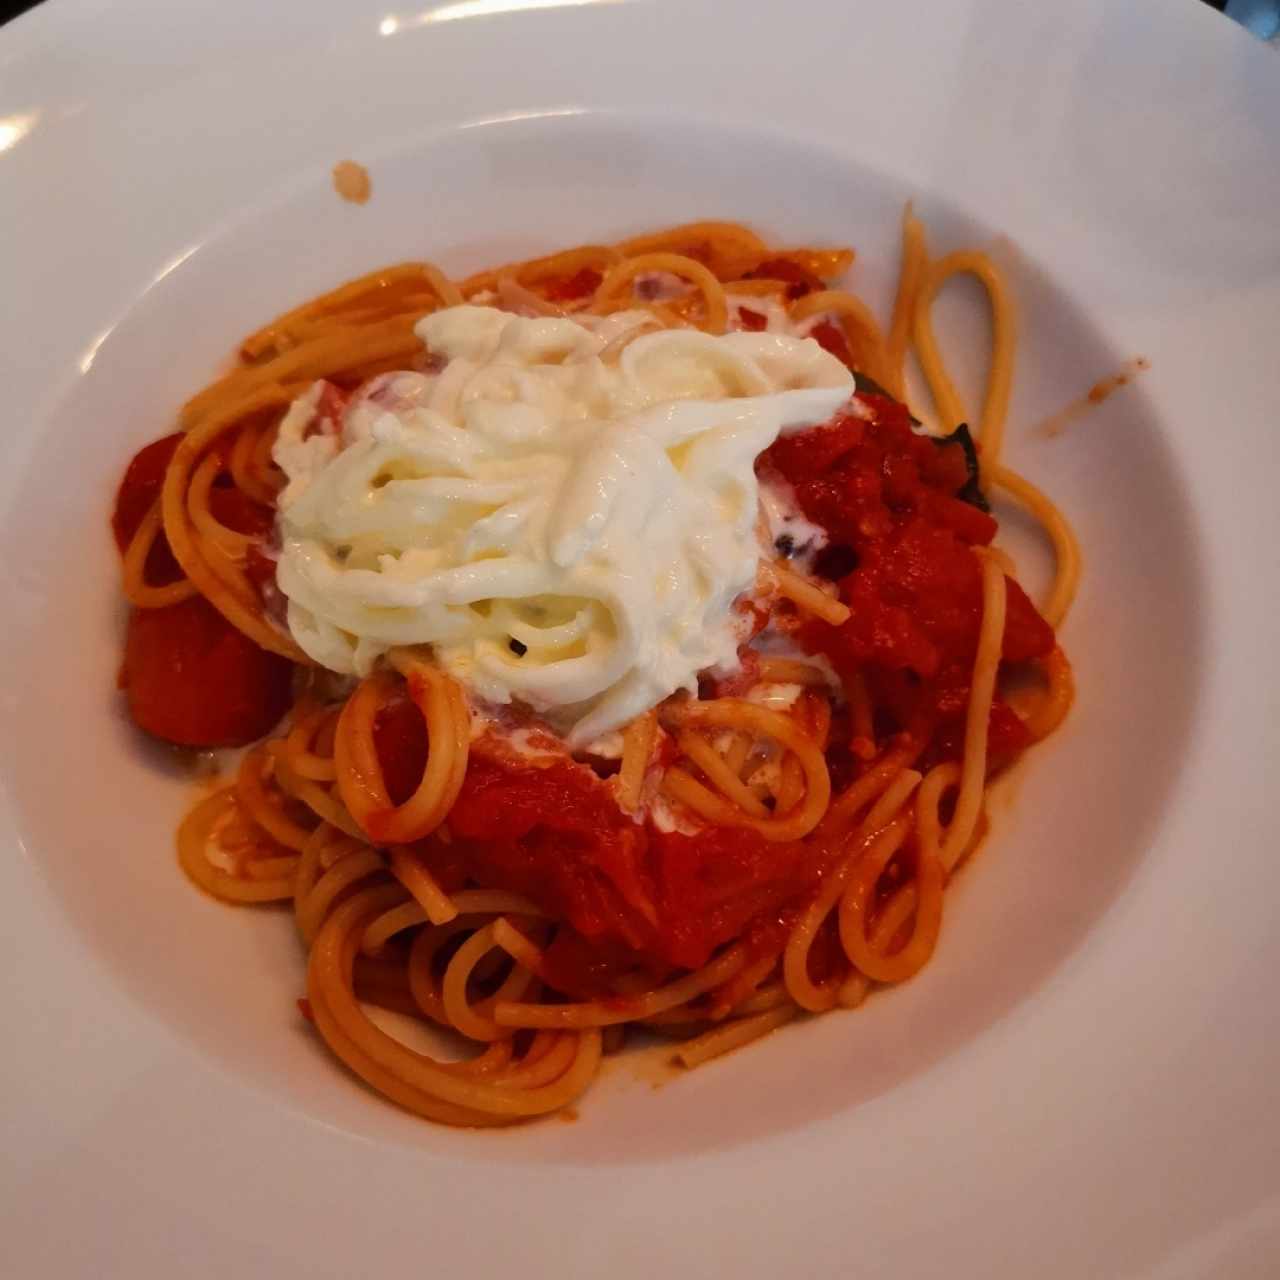 Spaghetti en salsa pomodoro picante con queso estilo burratta